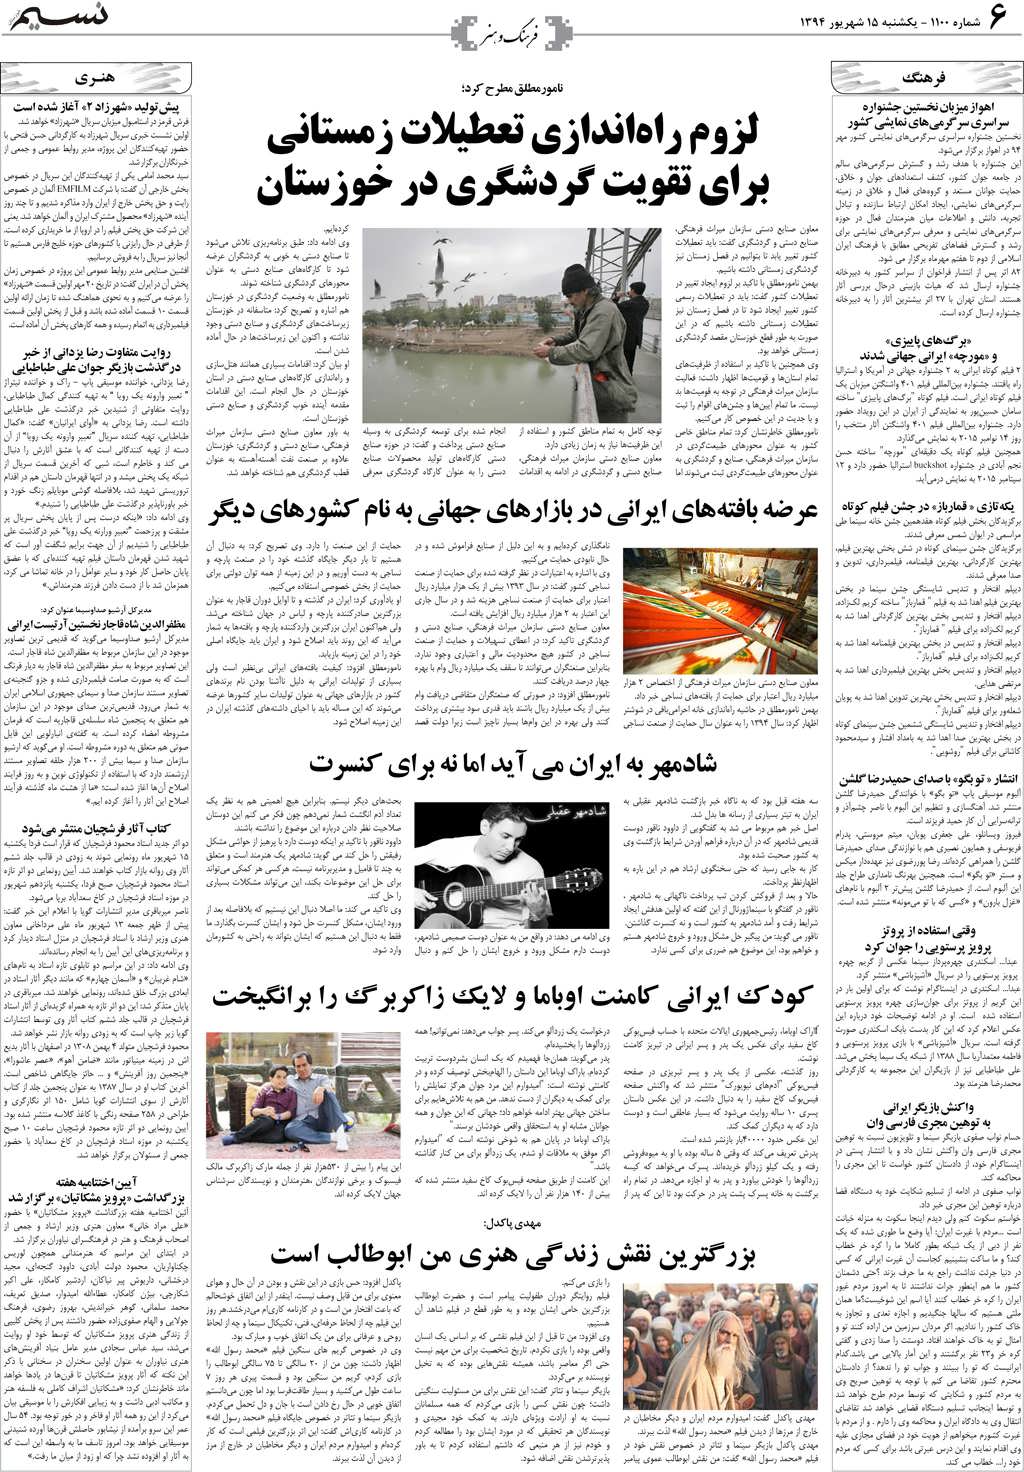 صفحه فرهنگ و هنر روزنامه نسیم شماره 1100